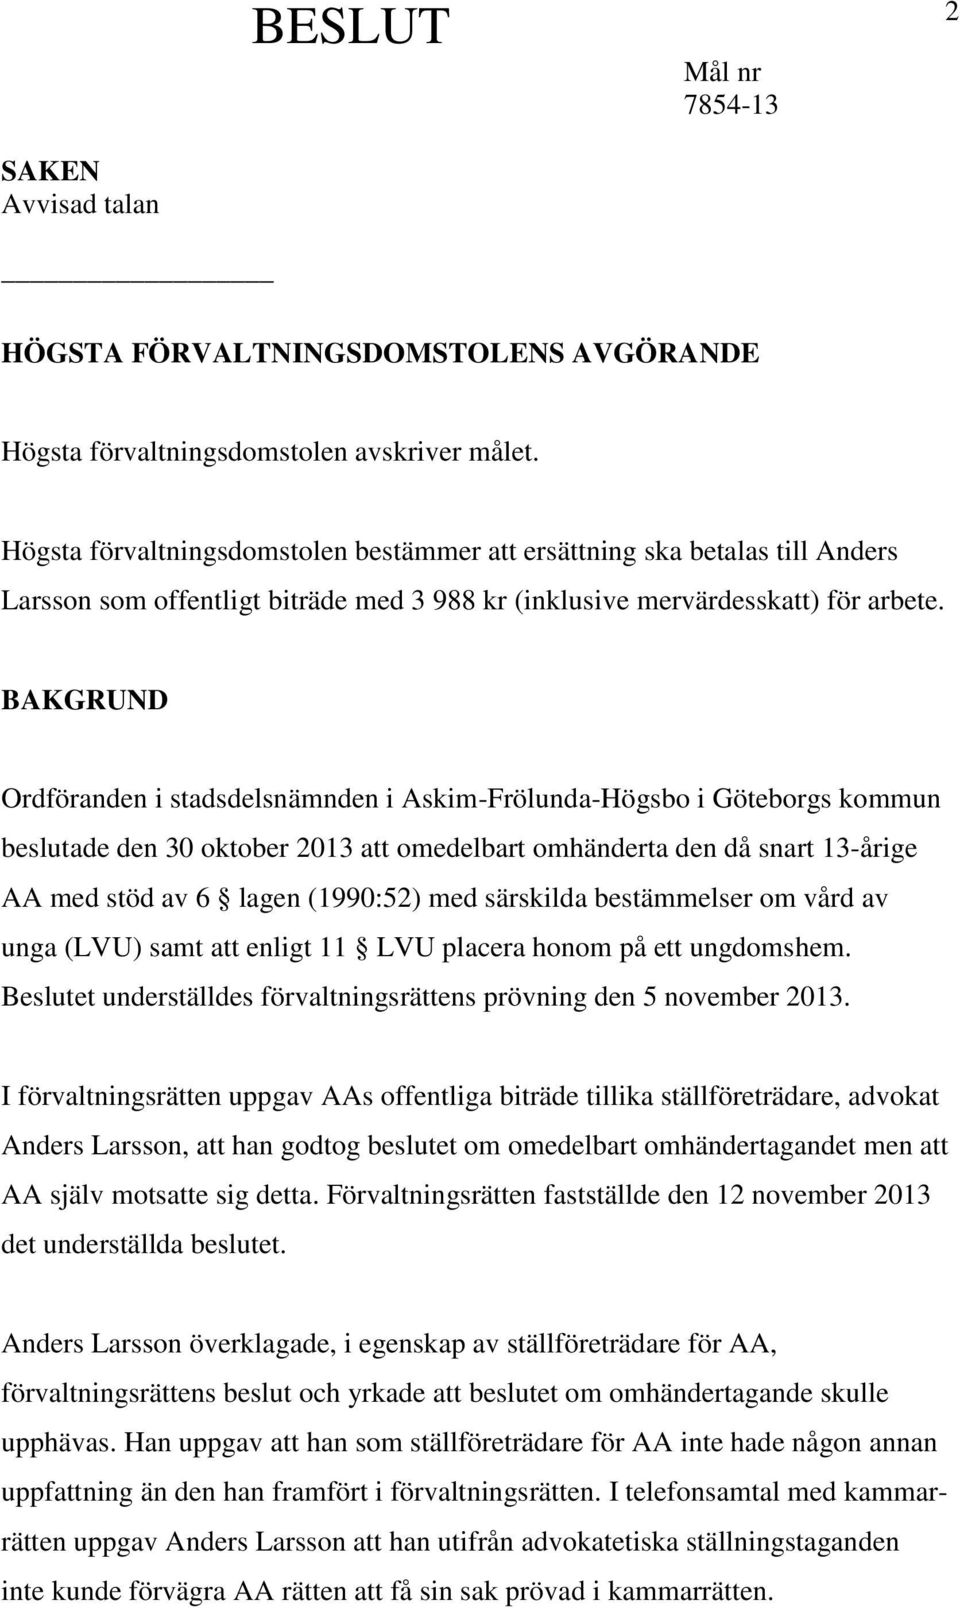 BAKGRUND Ordföranden i stadsdelsnämnden i Askim-Frölunda-Högsbo i Göteborgs kommun beslutade den 30 oktober 2013 att omedelbart omhänderta den då snart 13-årige AA med stöd av 6 lagen (1990:52) med